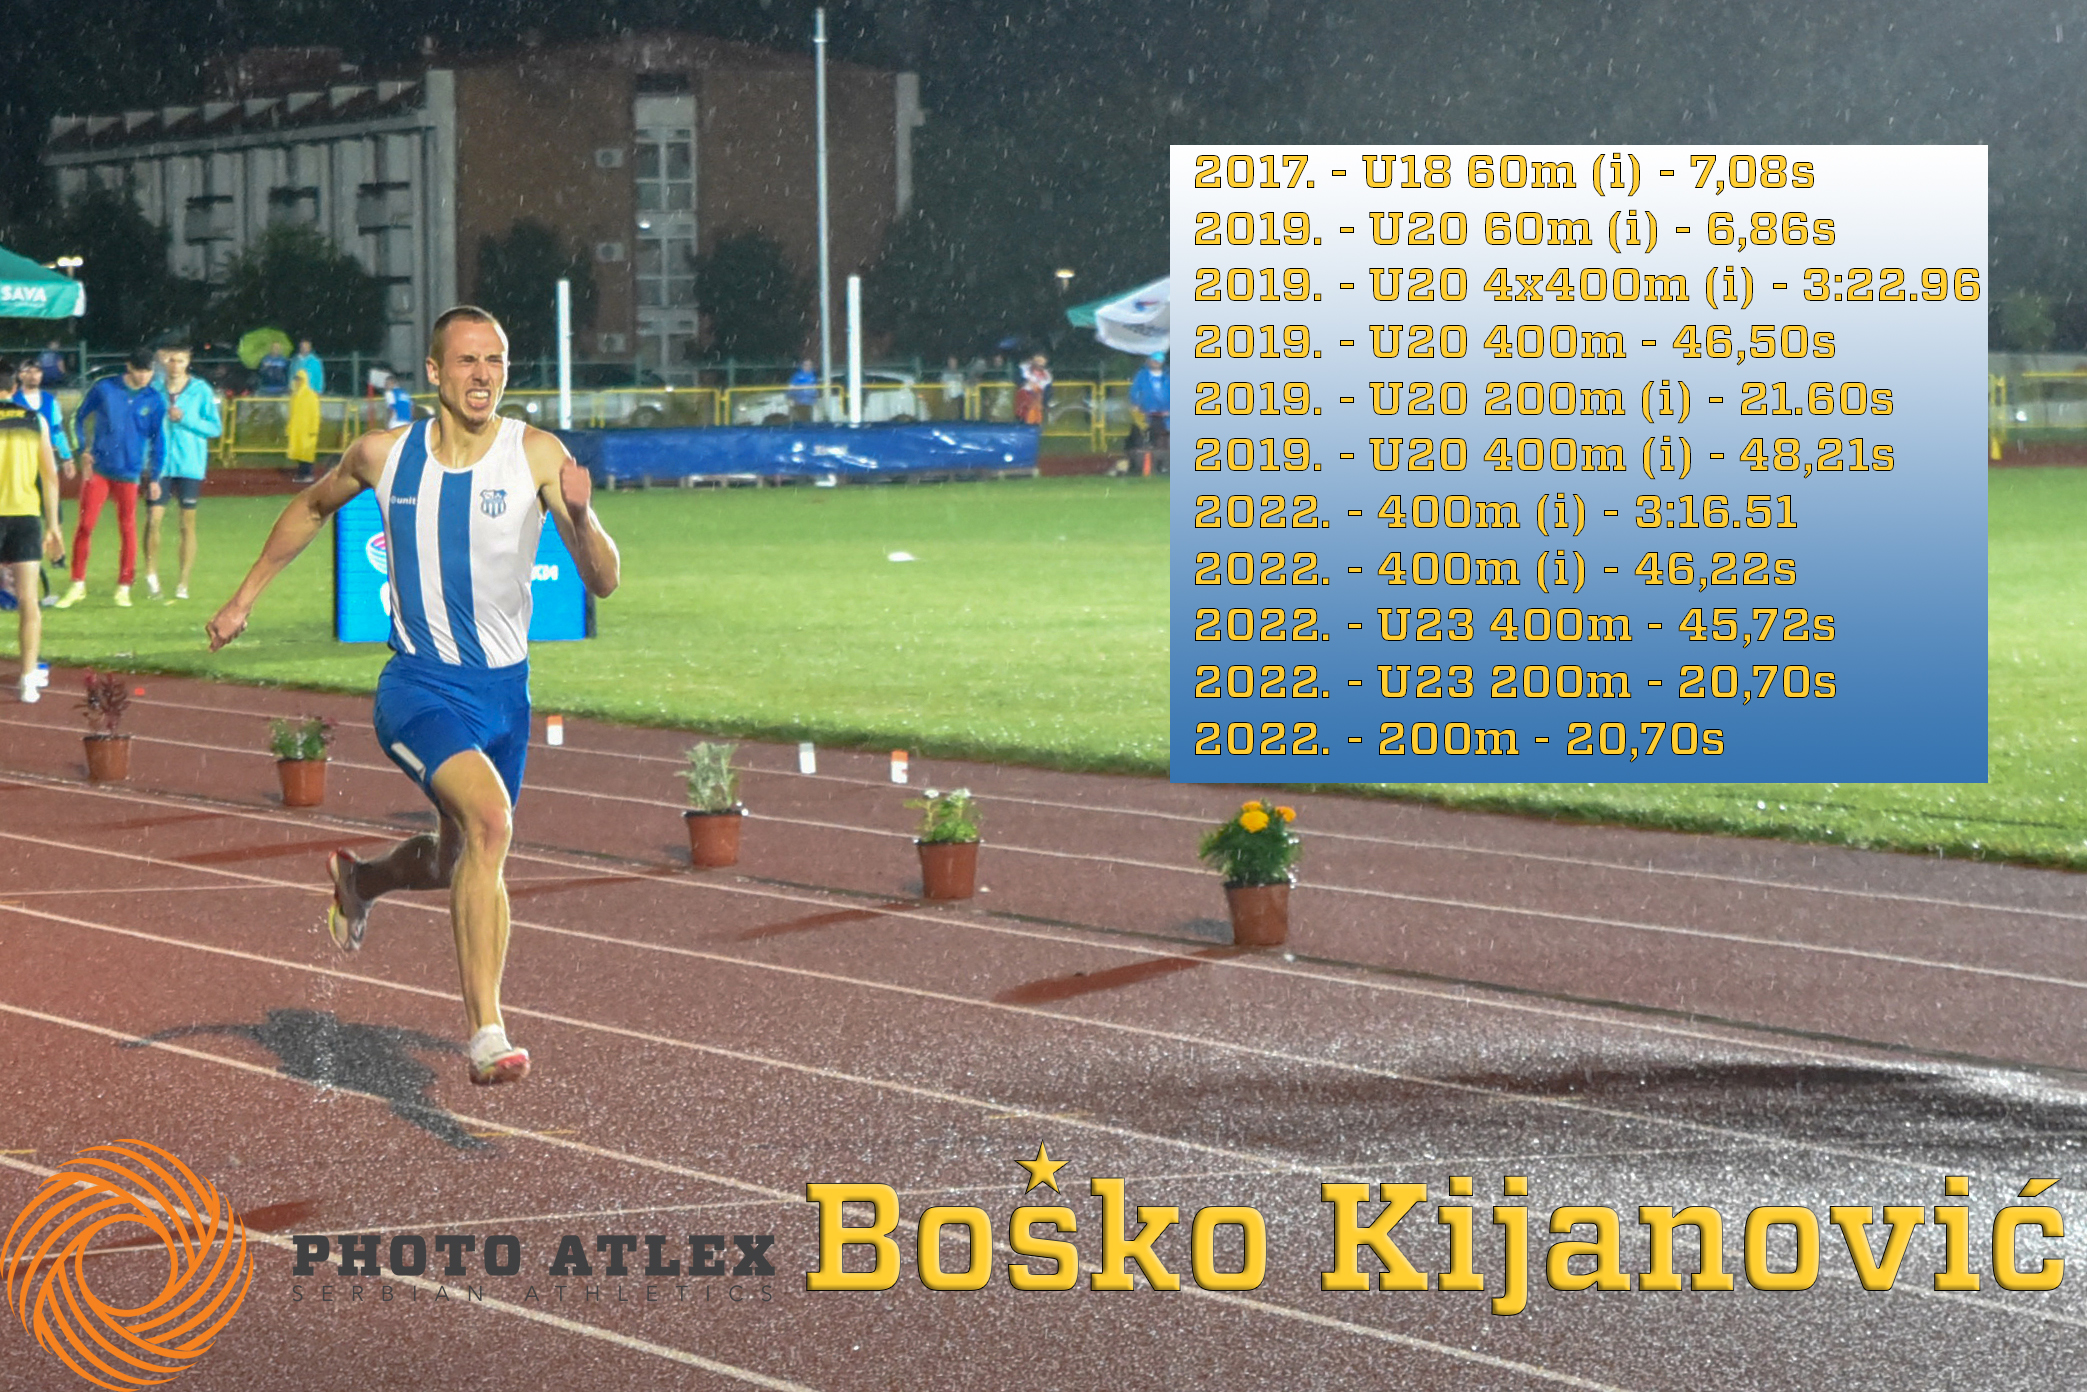 Niko nikad kao Boško: Nakon 38 godina pao rekord na 200m, Kijanović ”prišio zvezdicu” 11. državni! (VIDEO)